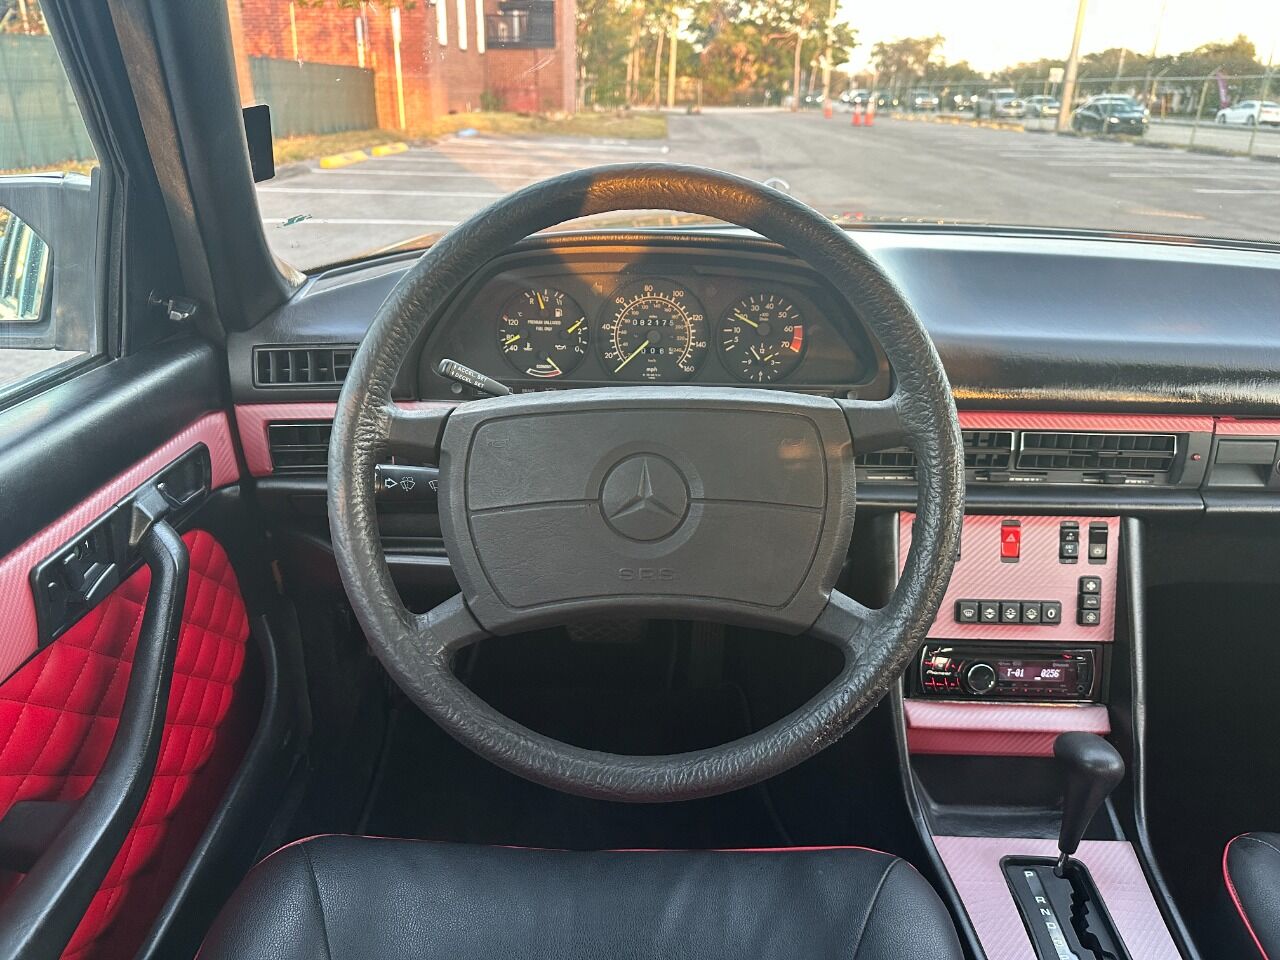 1988 Mercedes-Benz 420-Class  - $8,900